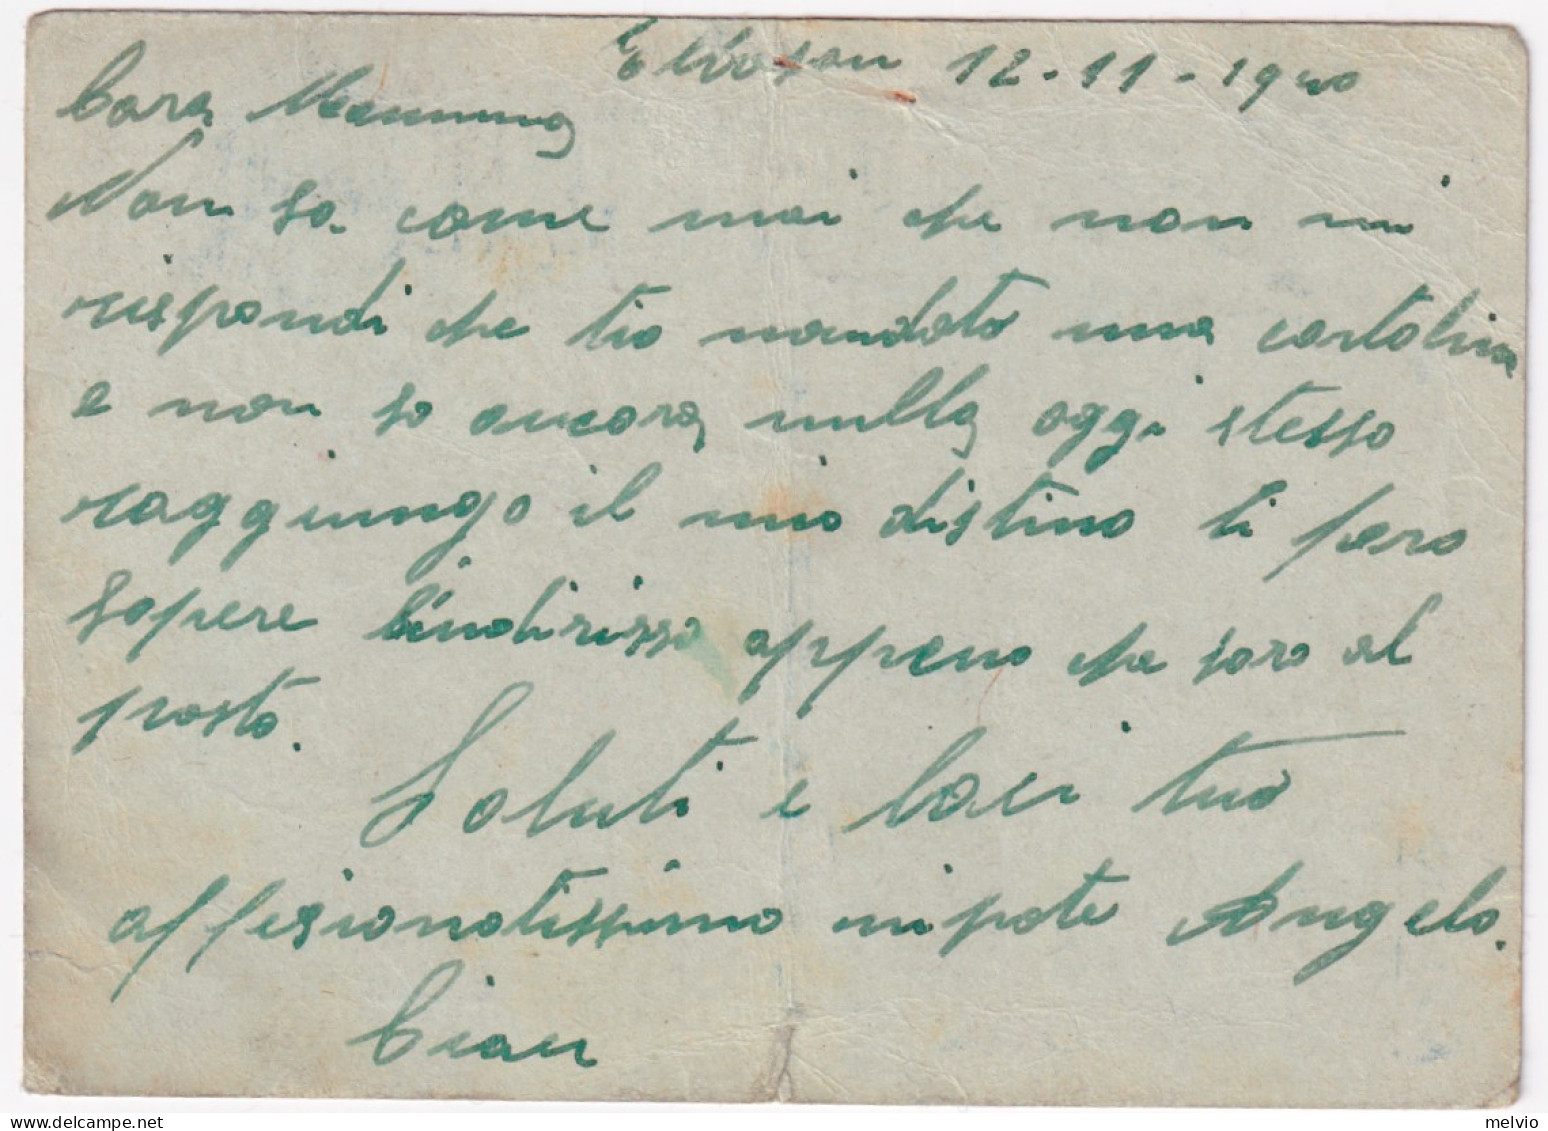 1940-UFFICIO POSTALE MILITARE/n. 99 BIS C.2 (13.11) Su Cartolina Franchigia Mano - Marcofilie